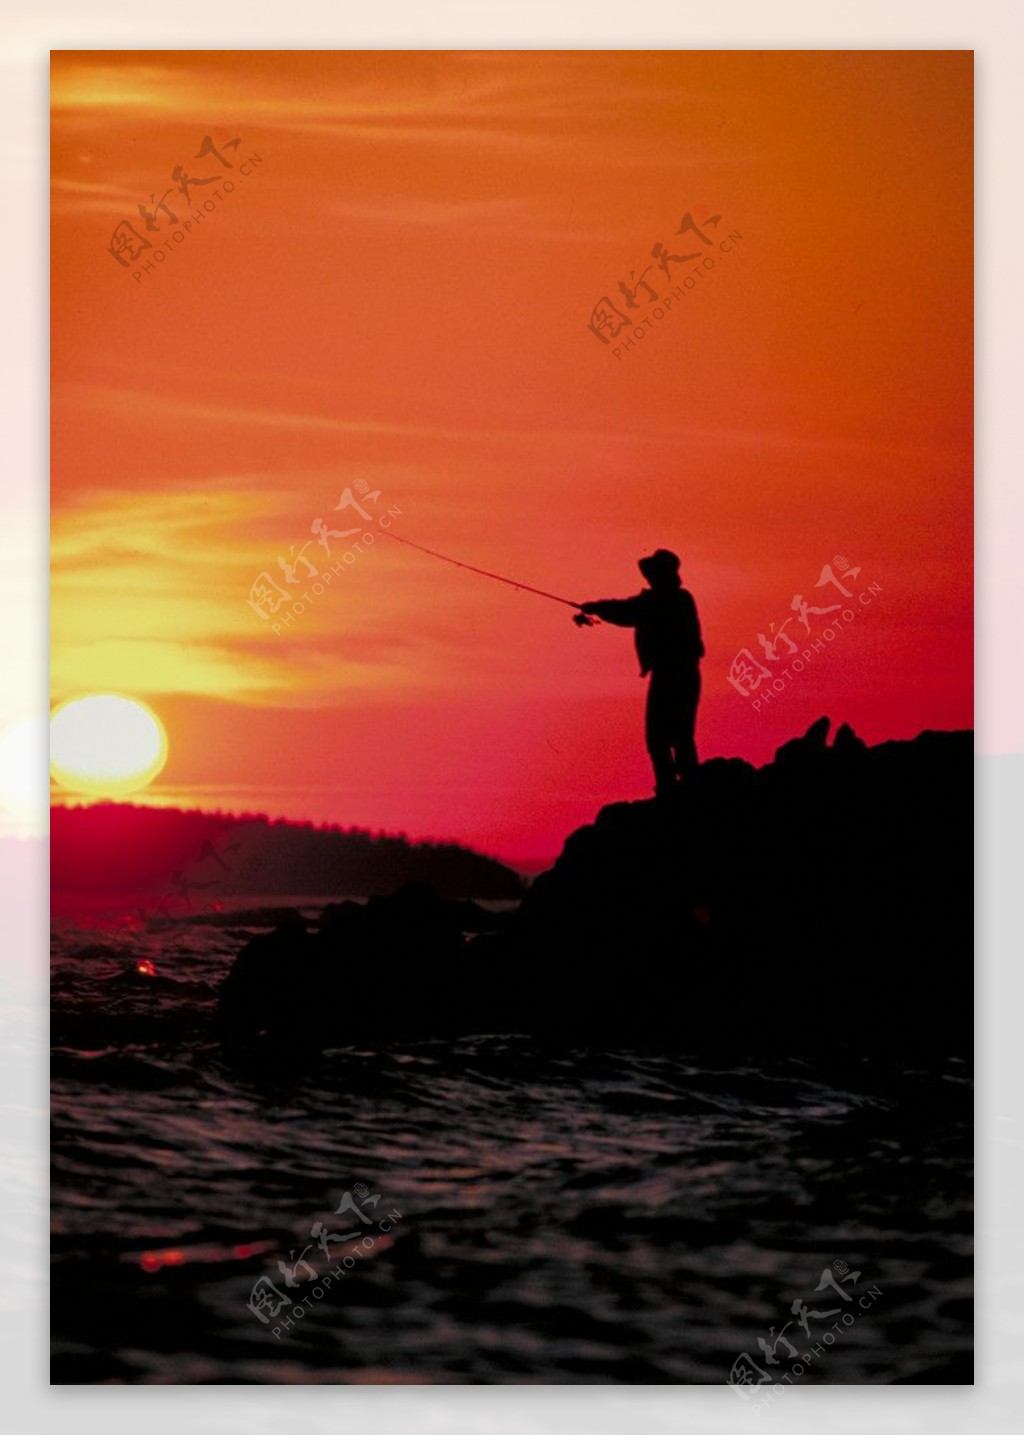 早晨在海边钓鱼的人图片